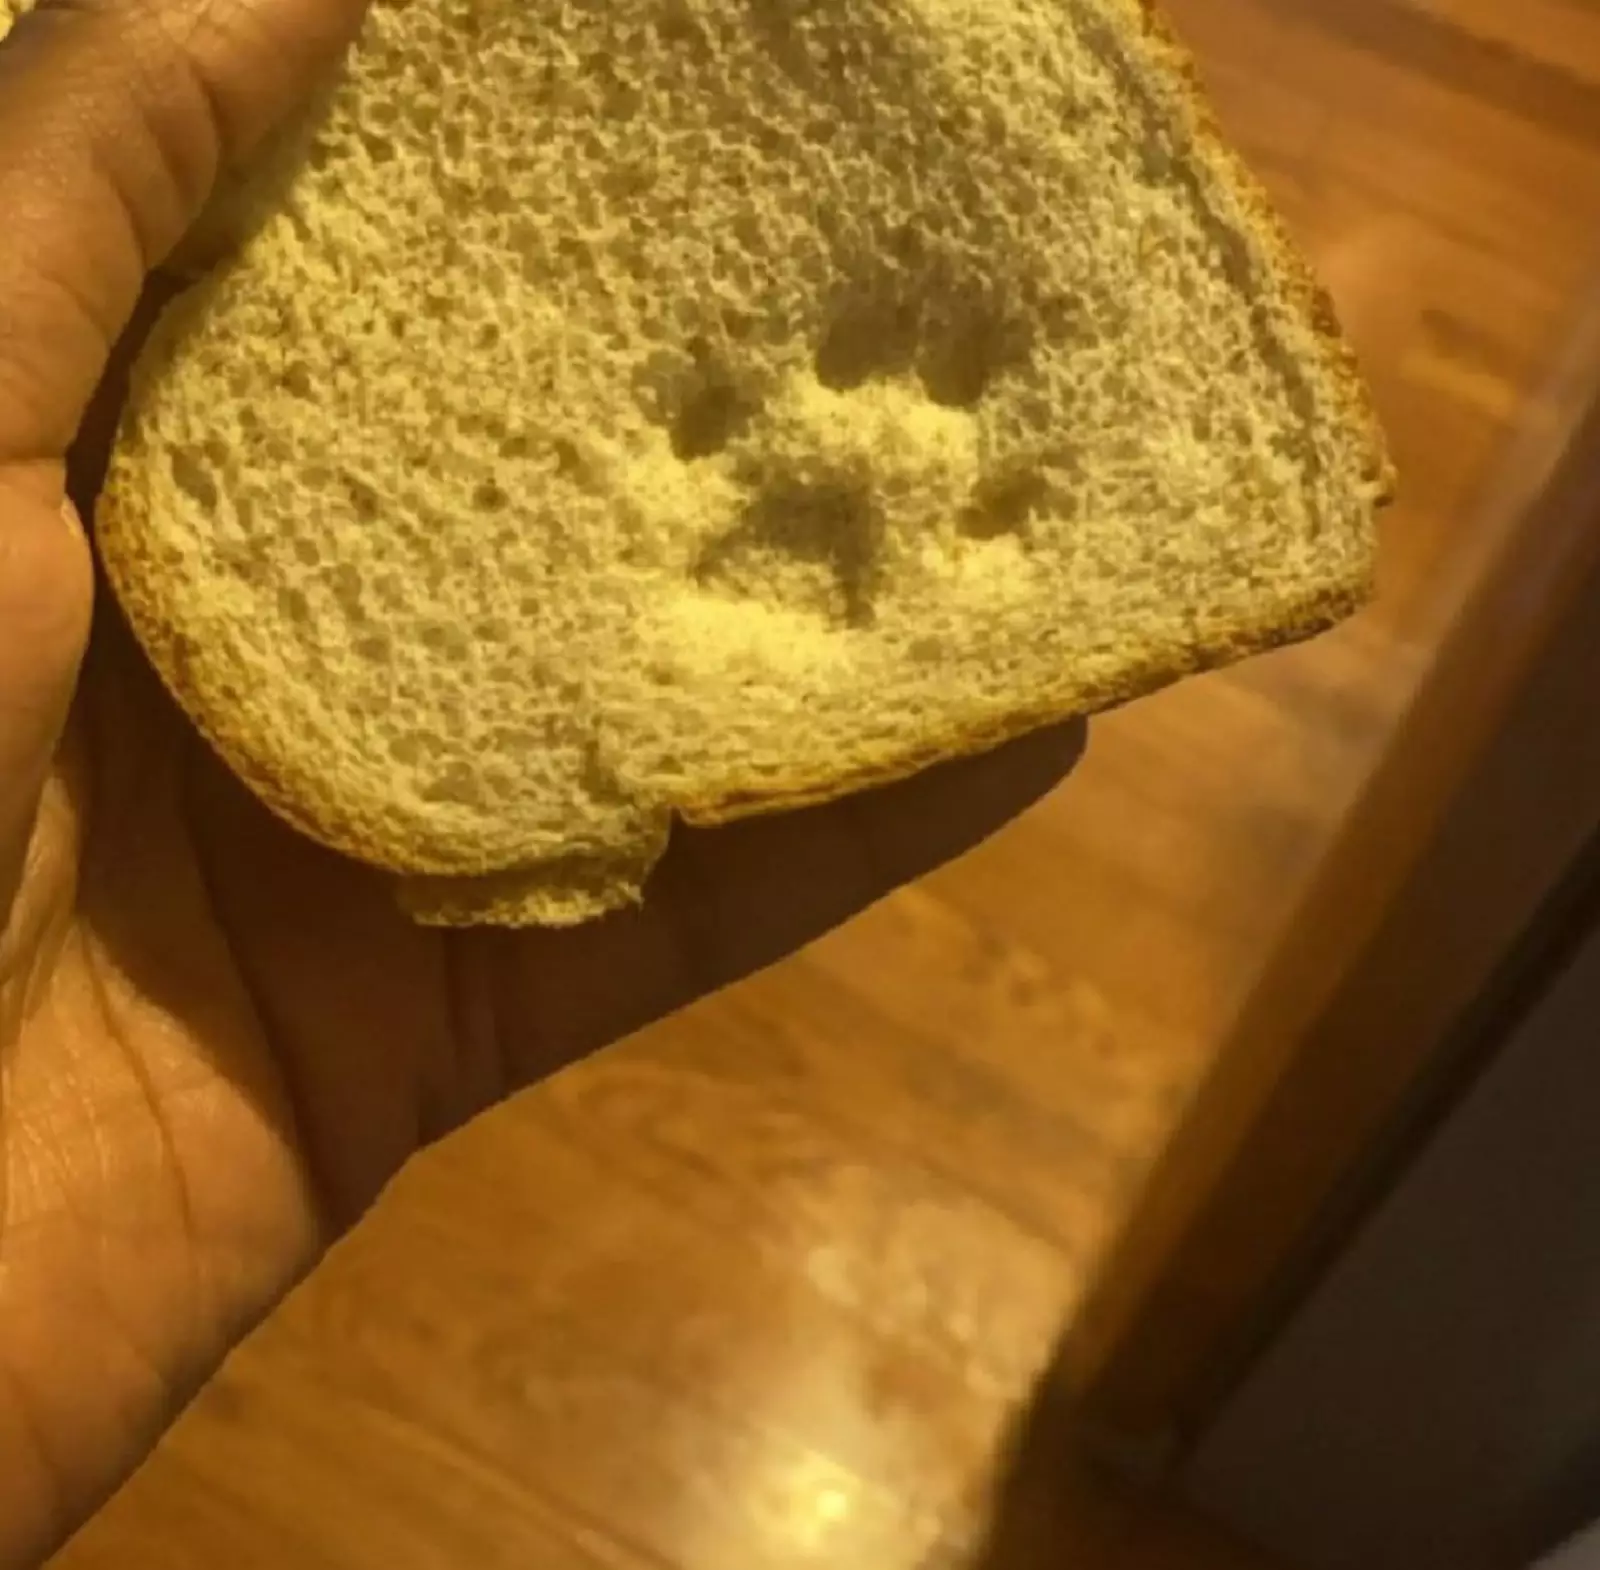 Кто-то забронировал себе кусок хлеба.